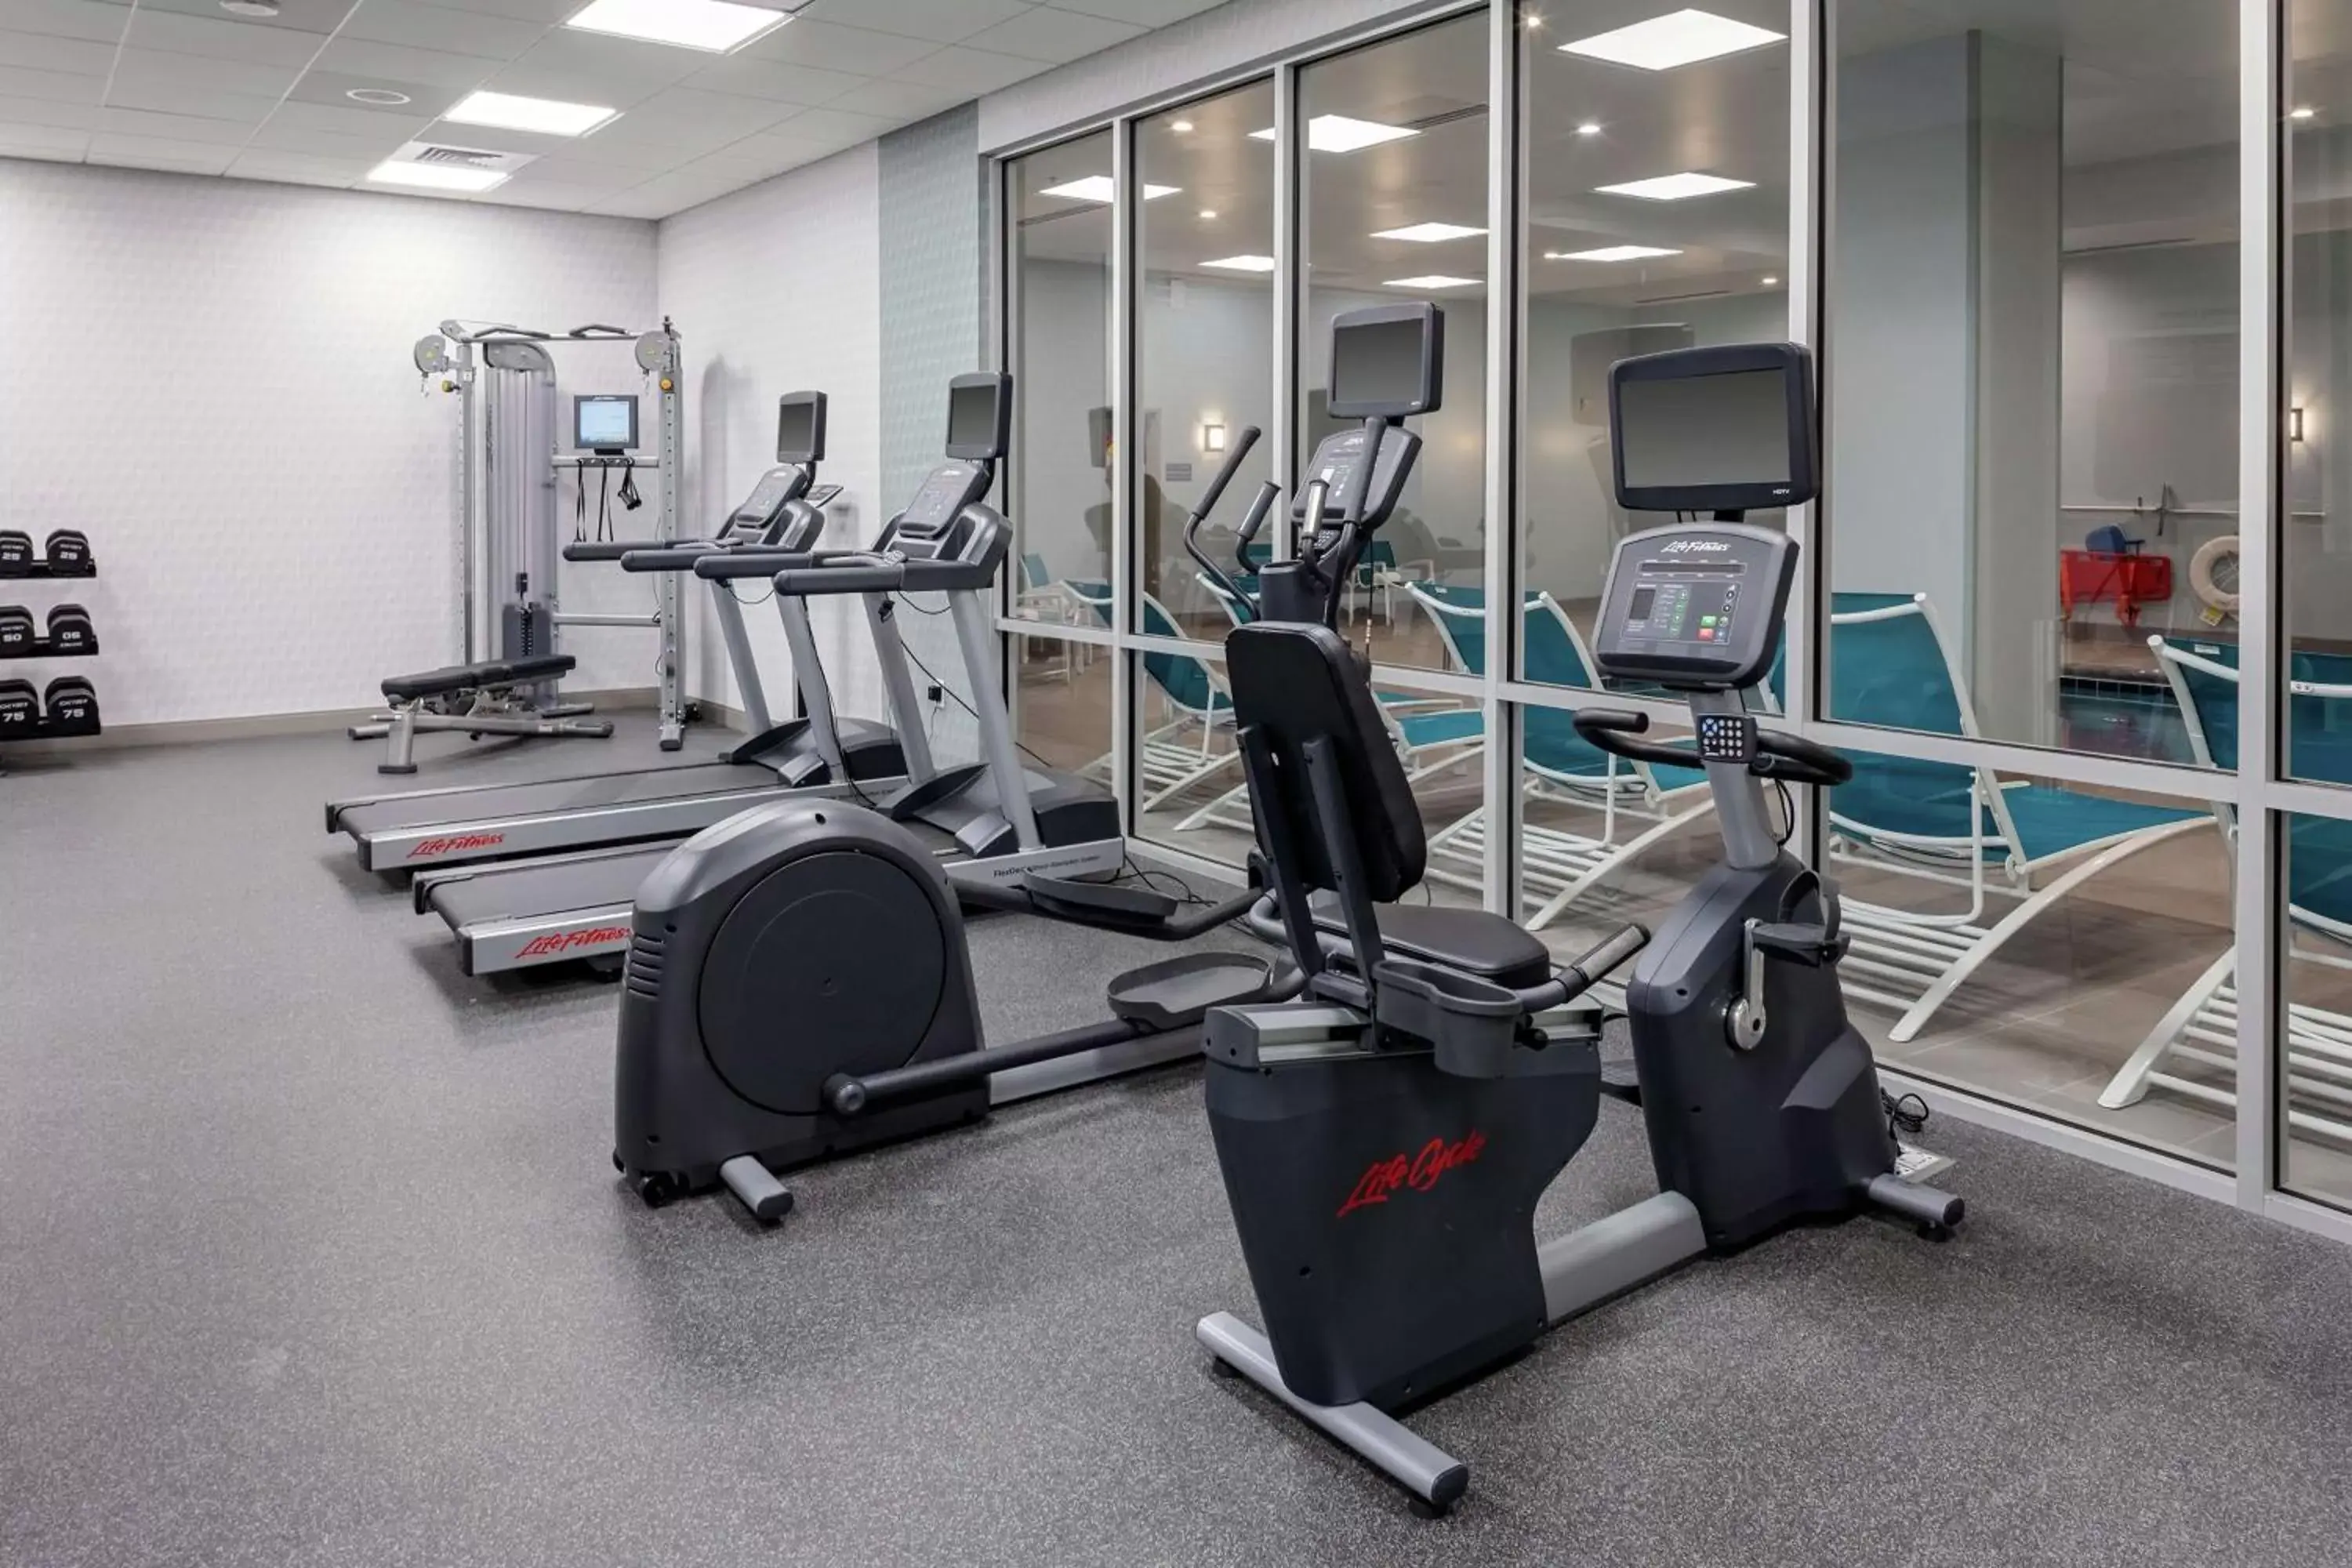 Fitness centre/facilities, Fitness Center/Facilities in Hilton Garden Inn Colorado Springs Downtown, Co